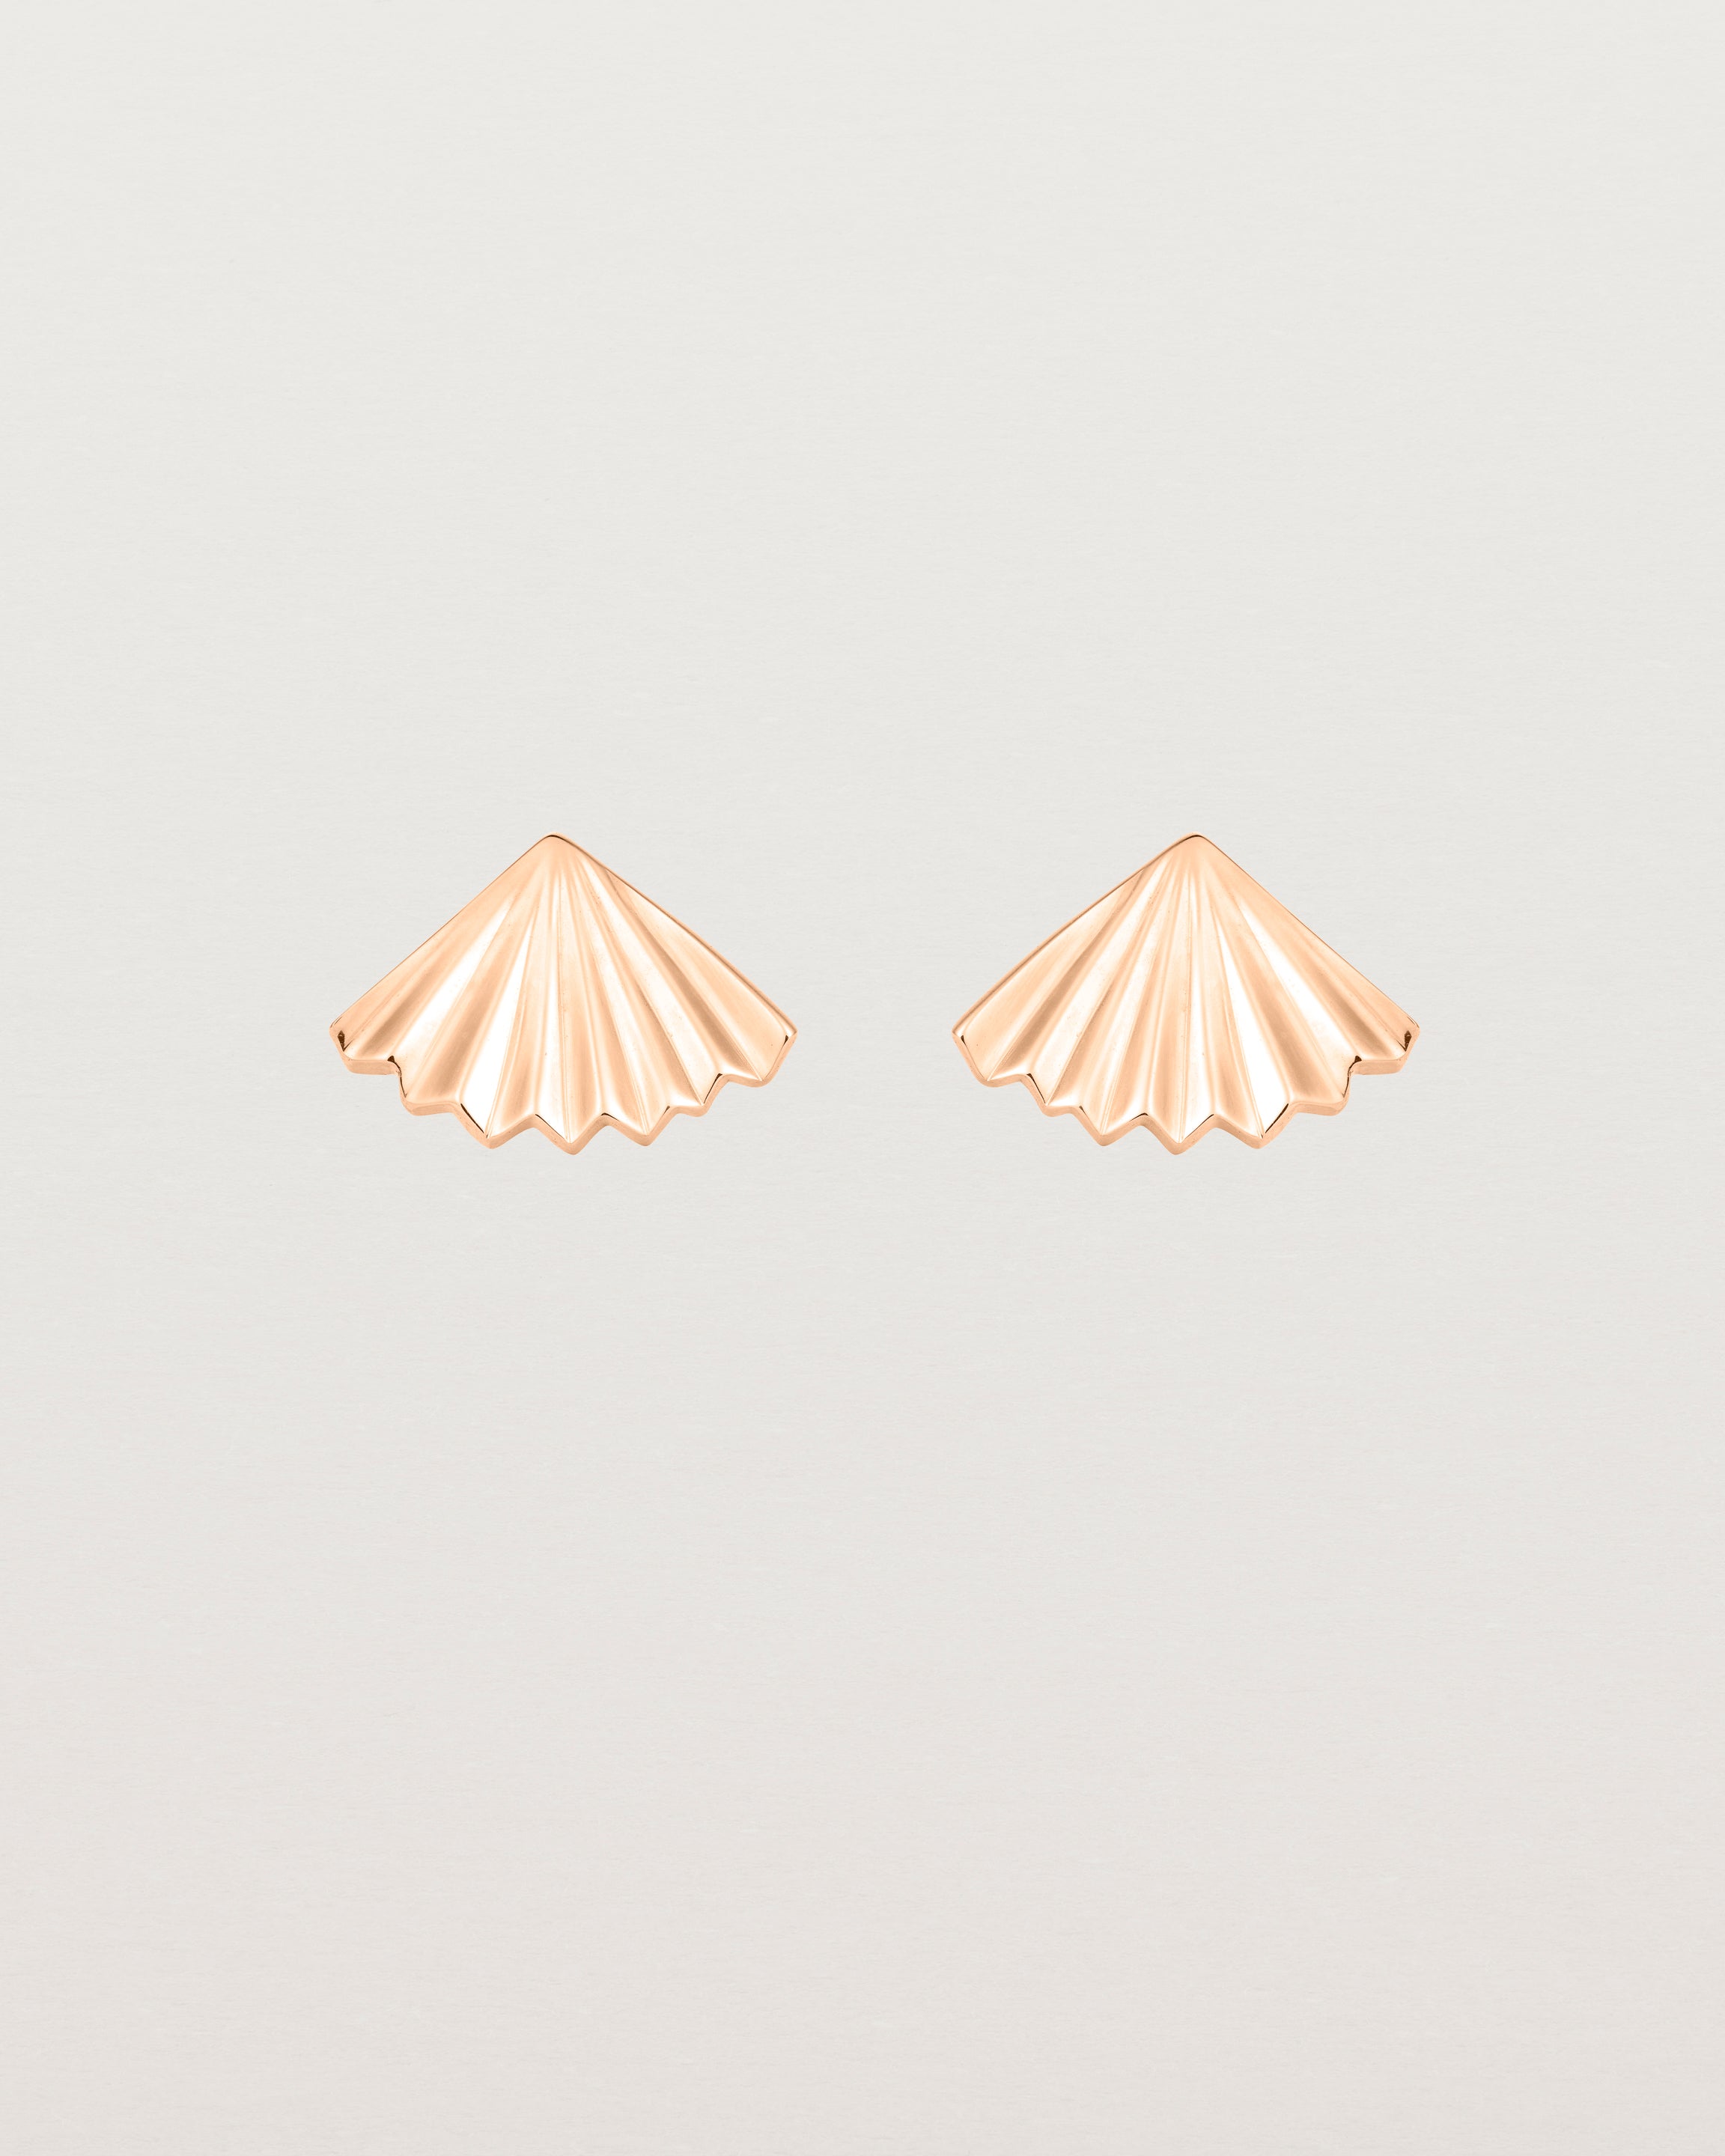 A pair of fan shaped rose gold earrings